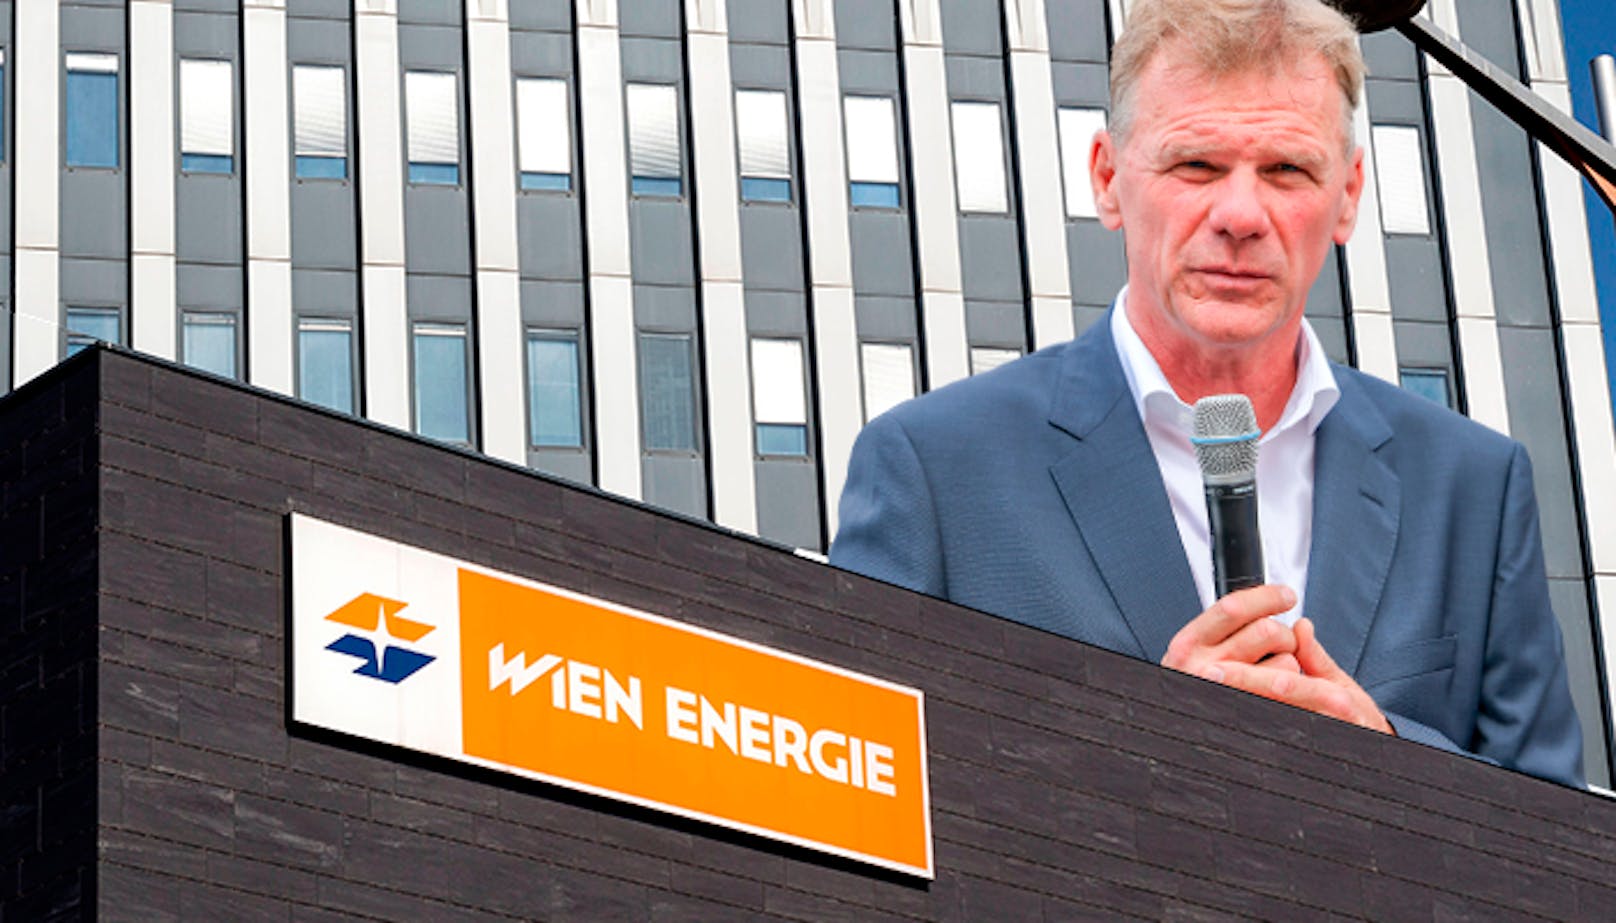 "Tsunami" – jetzt erklärt Wien-Energie-Chef alles